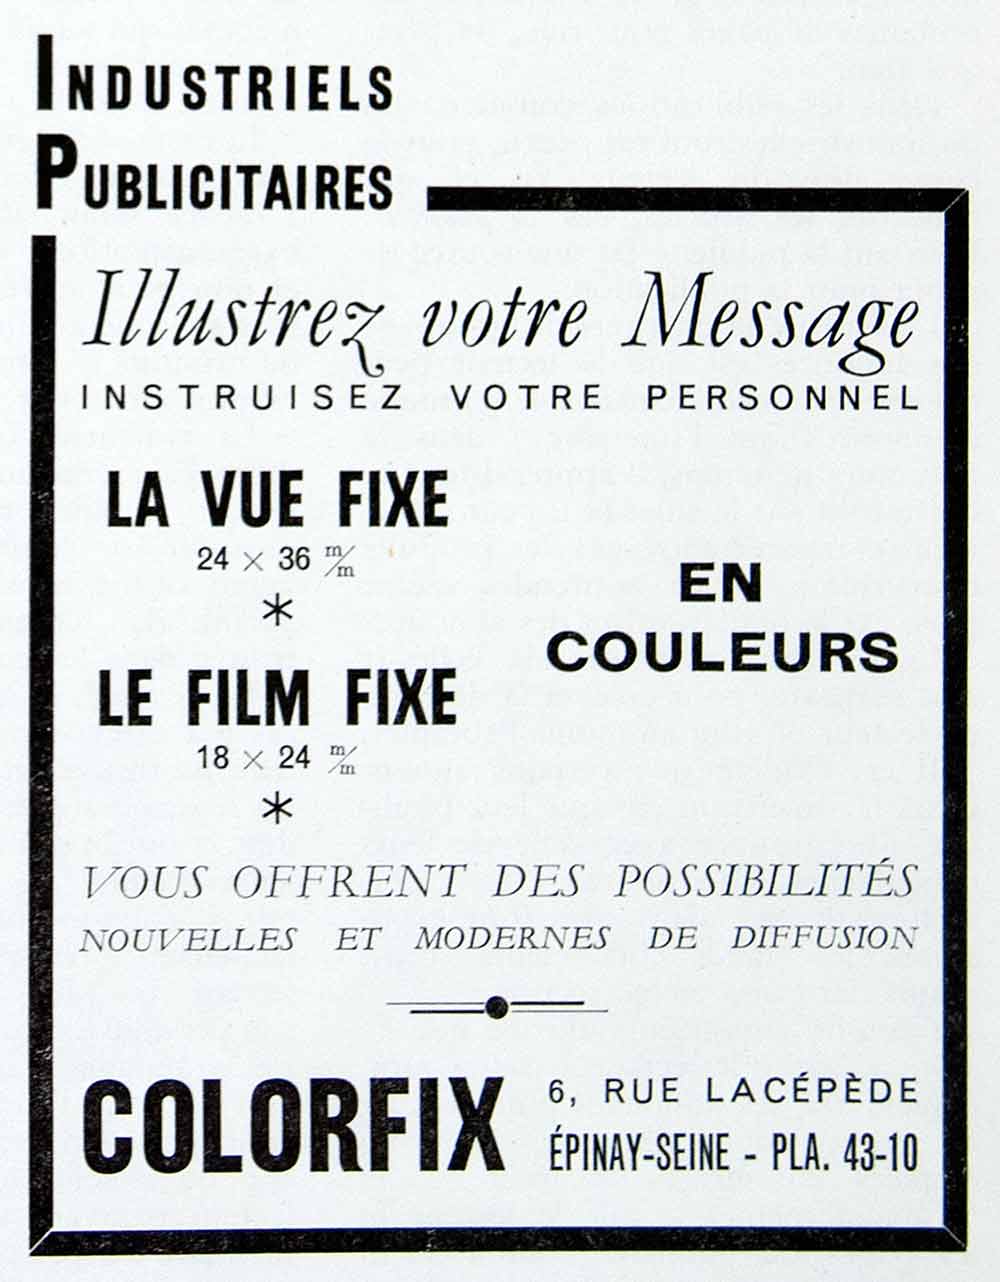 1956 Ad Colorfix Illustration Services French Industriels Publicitaires VEN6